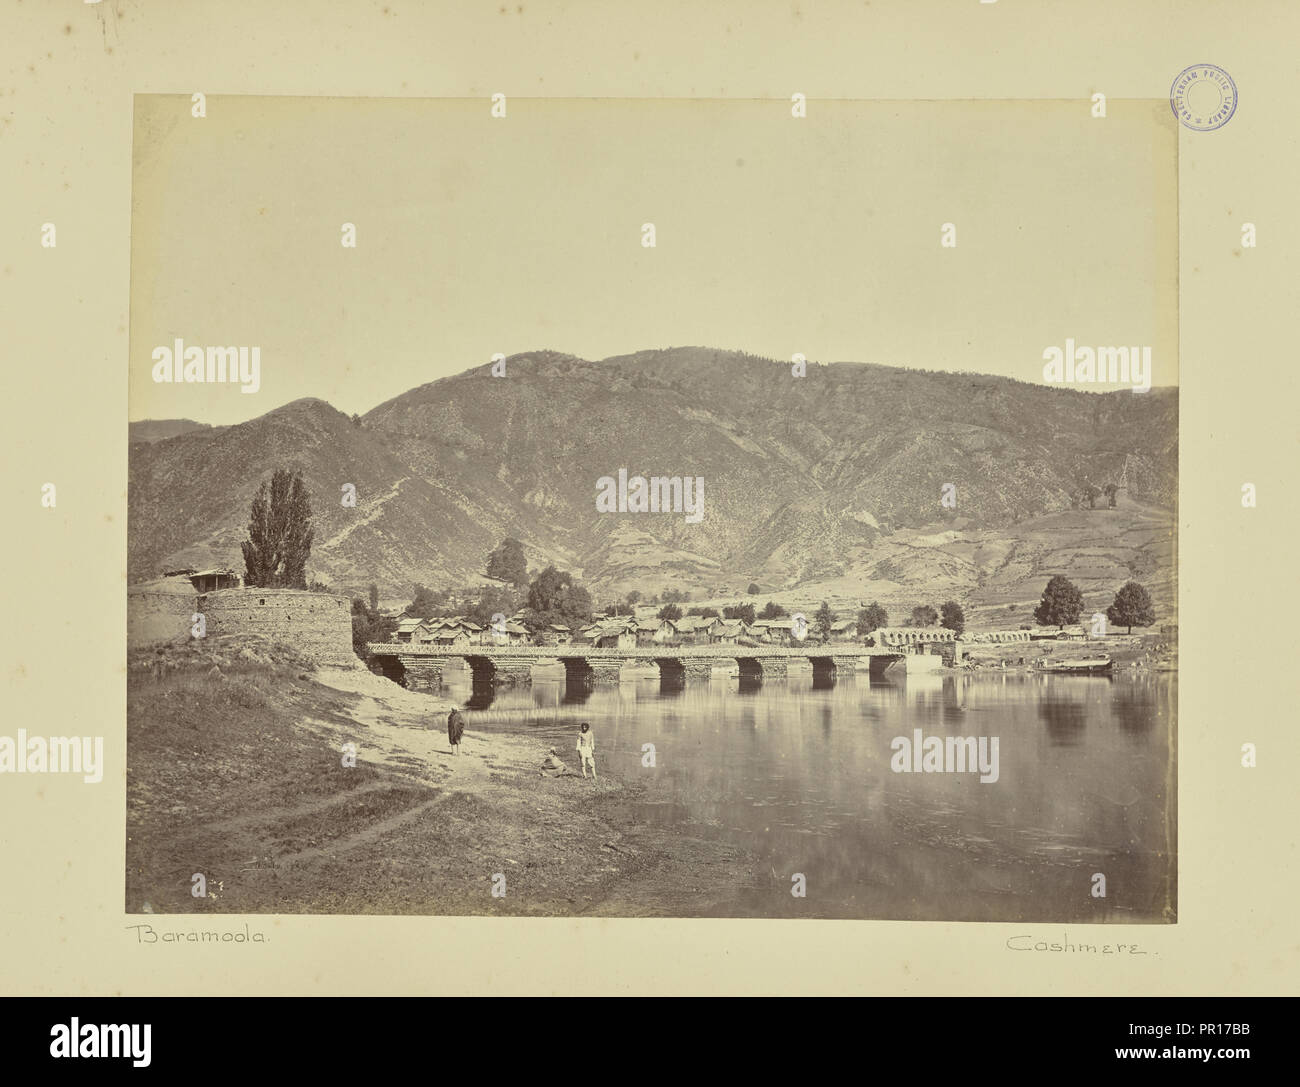 Baramoola. Cashmere; William H. Baker, britannico, circa 1829 - 1880, Baramulla, Kashmir India, Asia; 1860 - 1870s; albume d'uovo Foto Stock